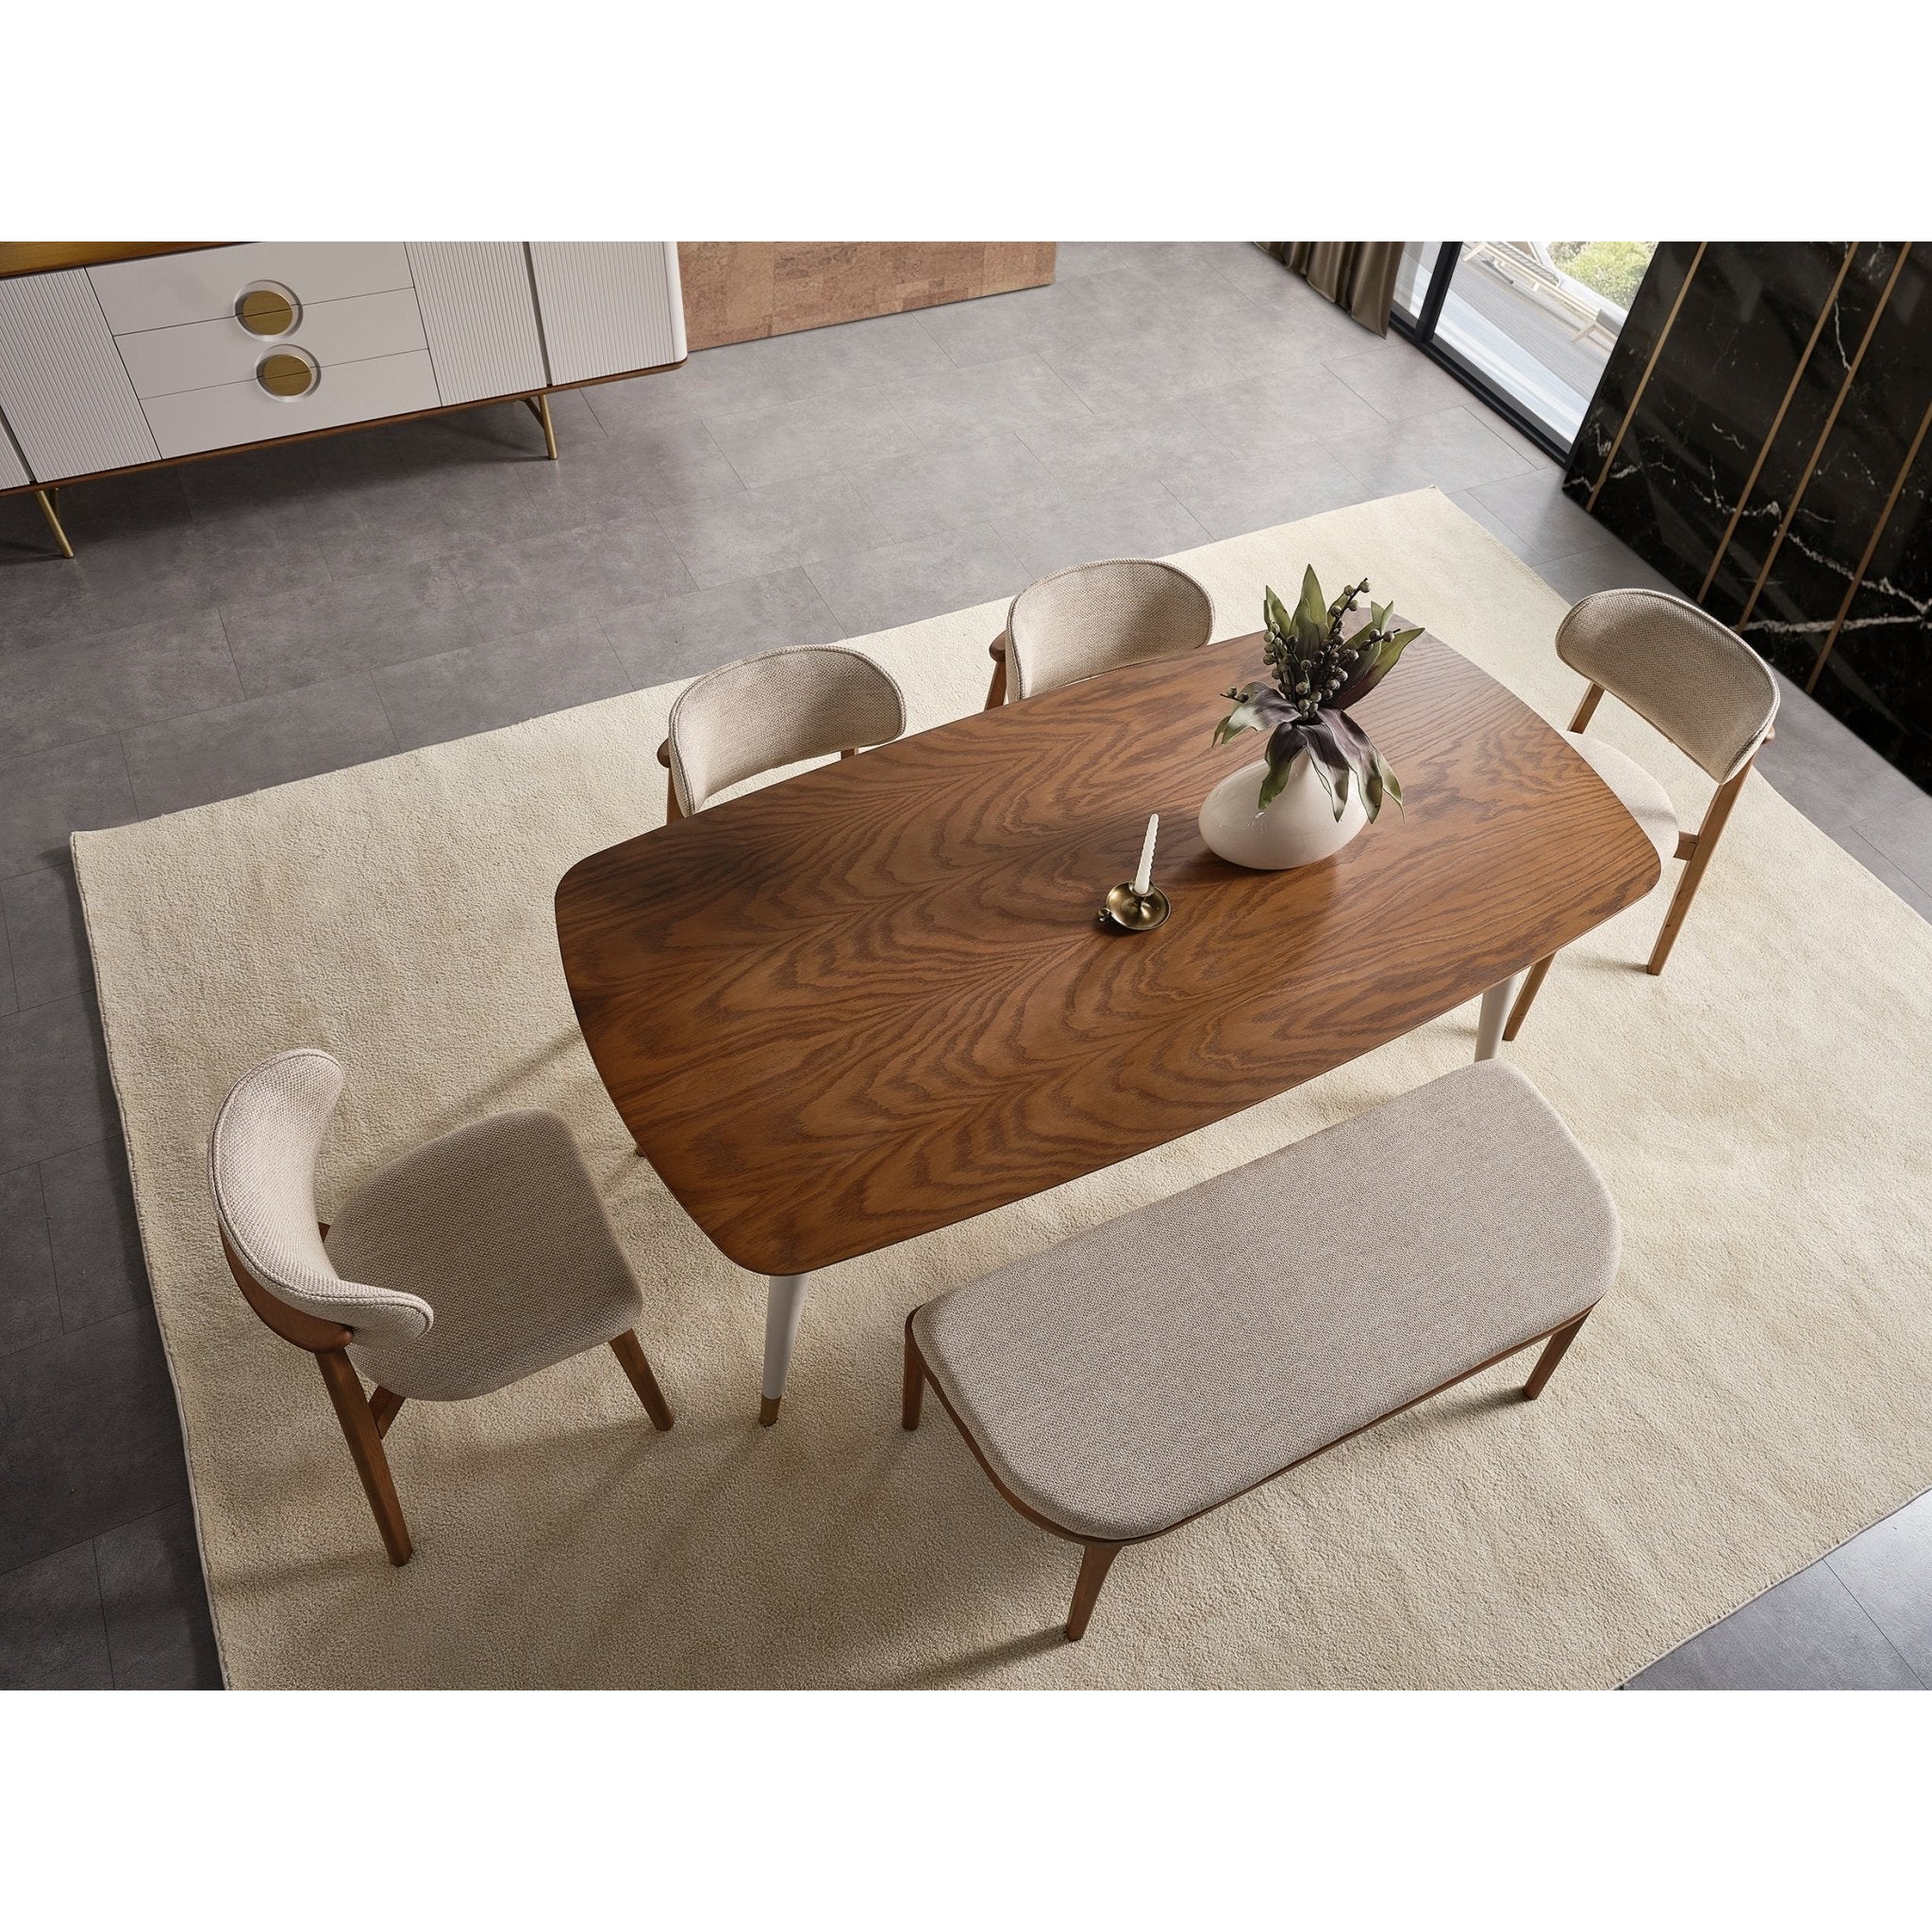 Viola Stol - LINE Furniture Group